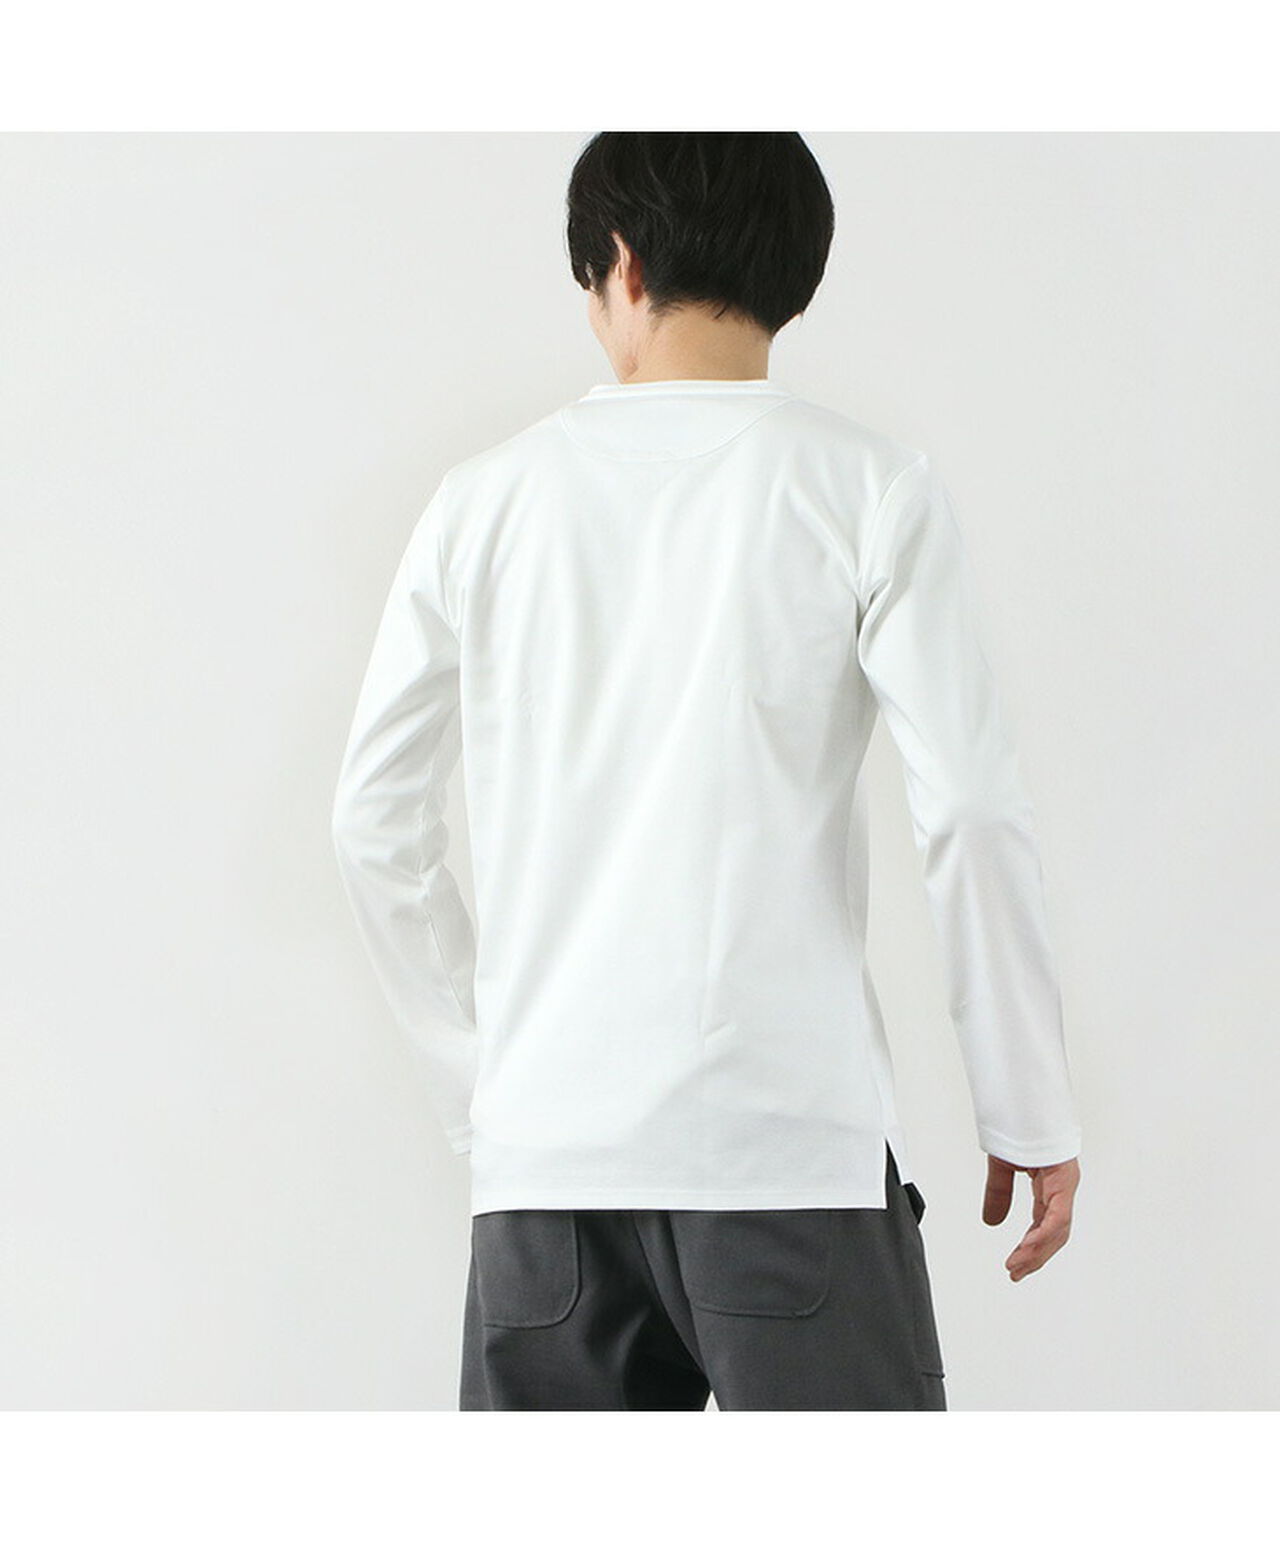 Tokyo Made V-Neck Long Sleeve Dress T-Shirt,, large image number 8